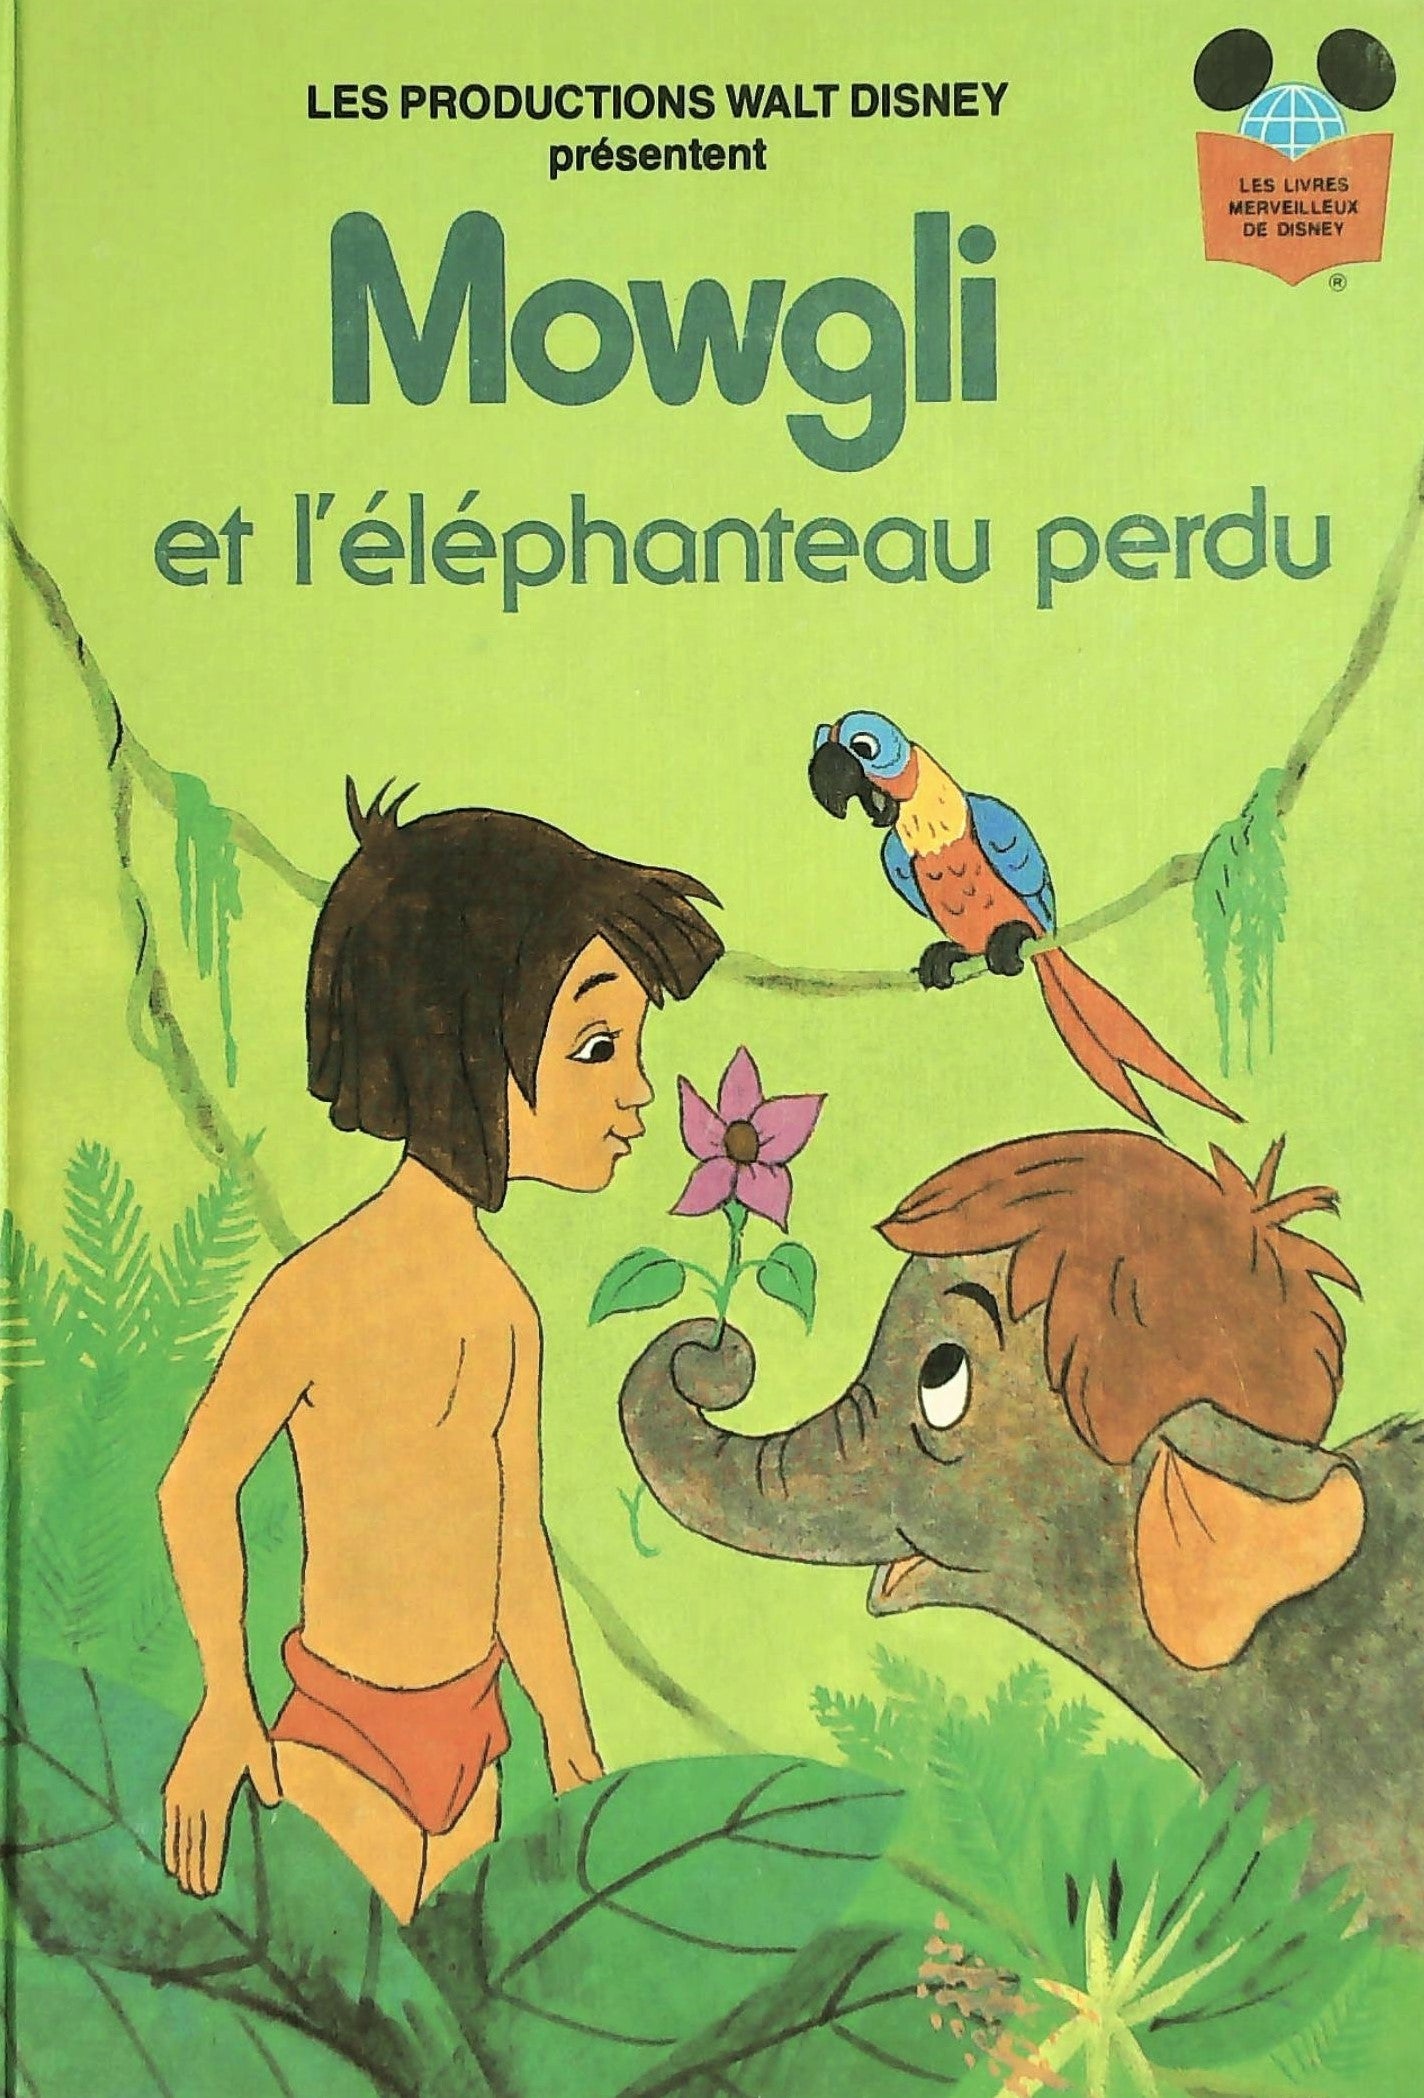 Les livres merveilleux de Disney : Mowgli et l'éléphanteau perdu